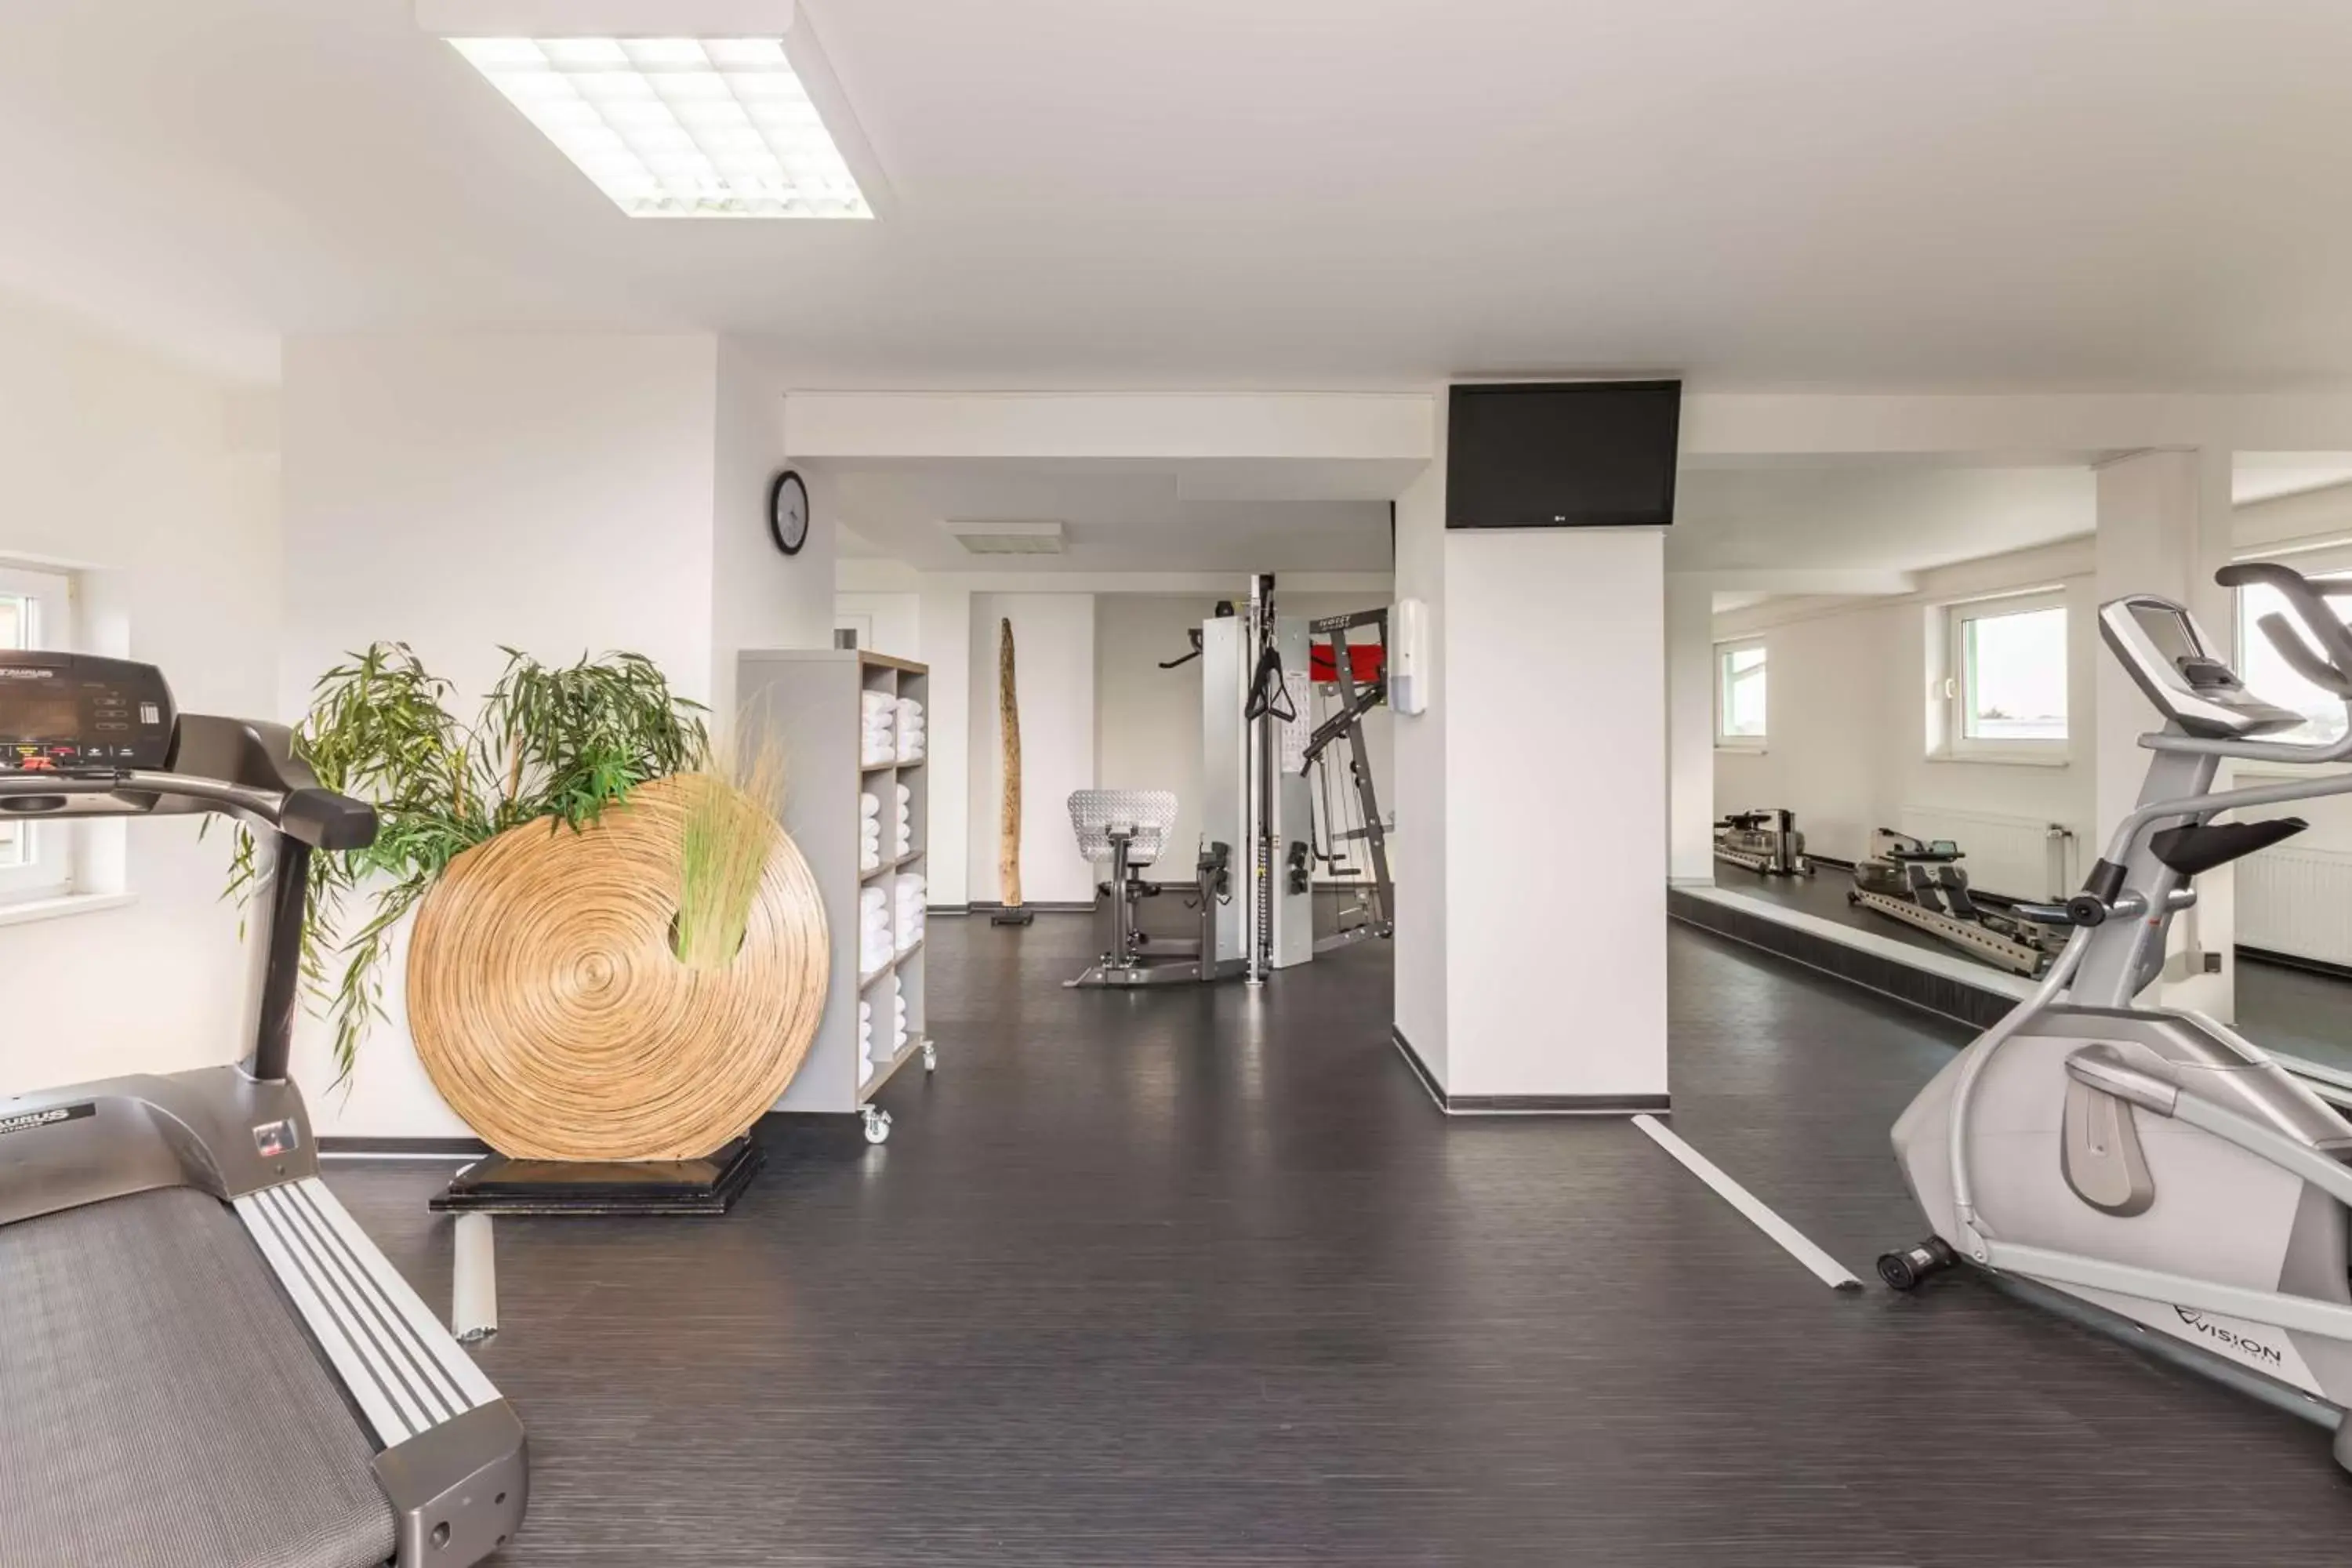 Fitness centre/facilities, Fitness Center/Facilities in Park Inn by Radisson Göttingen